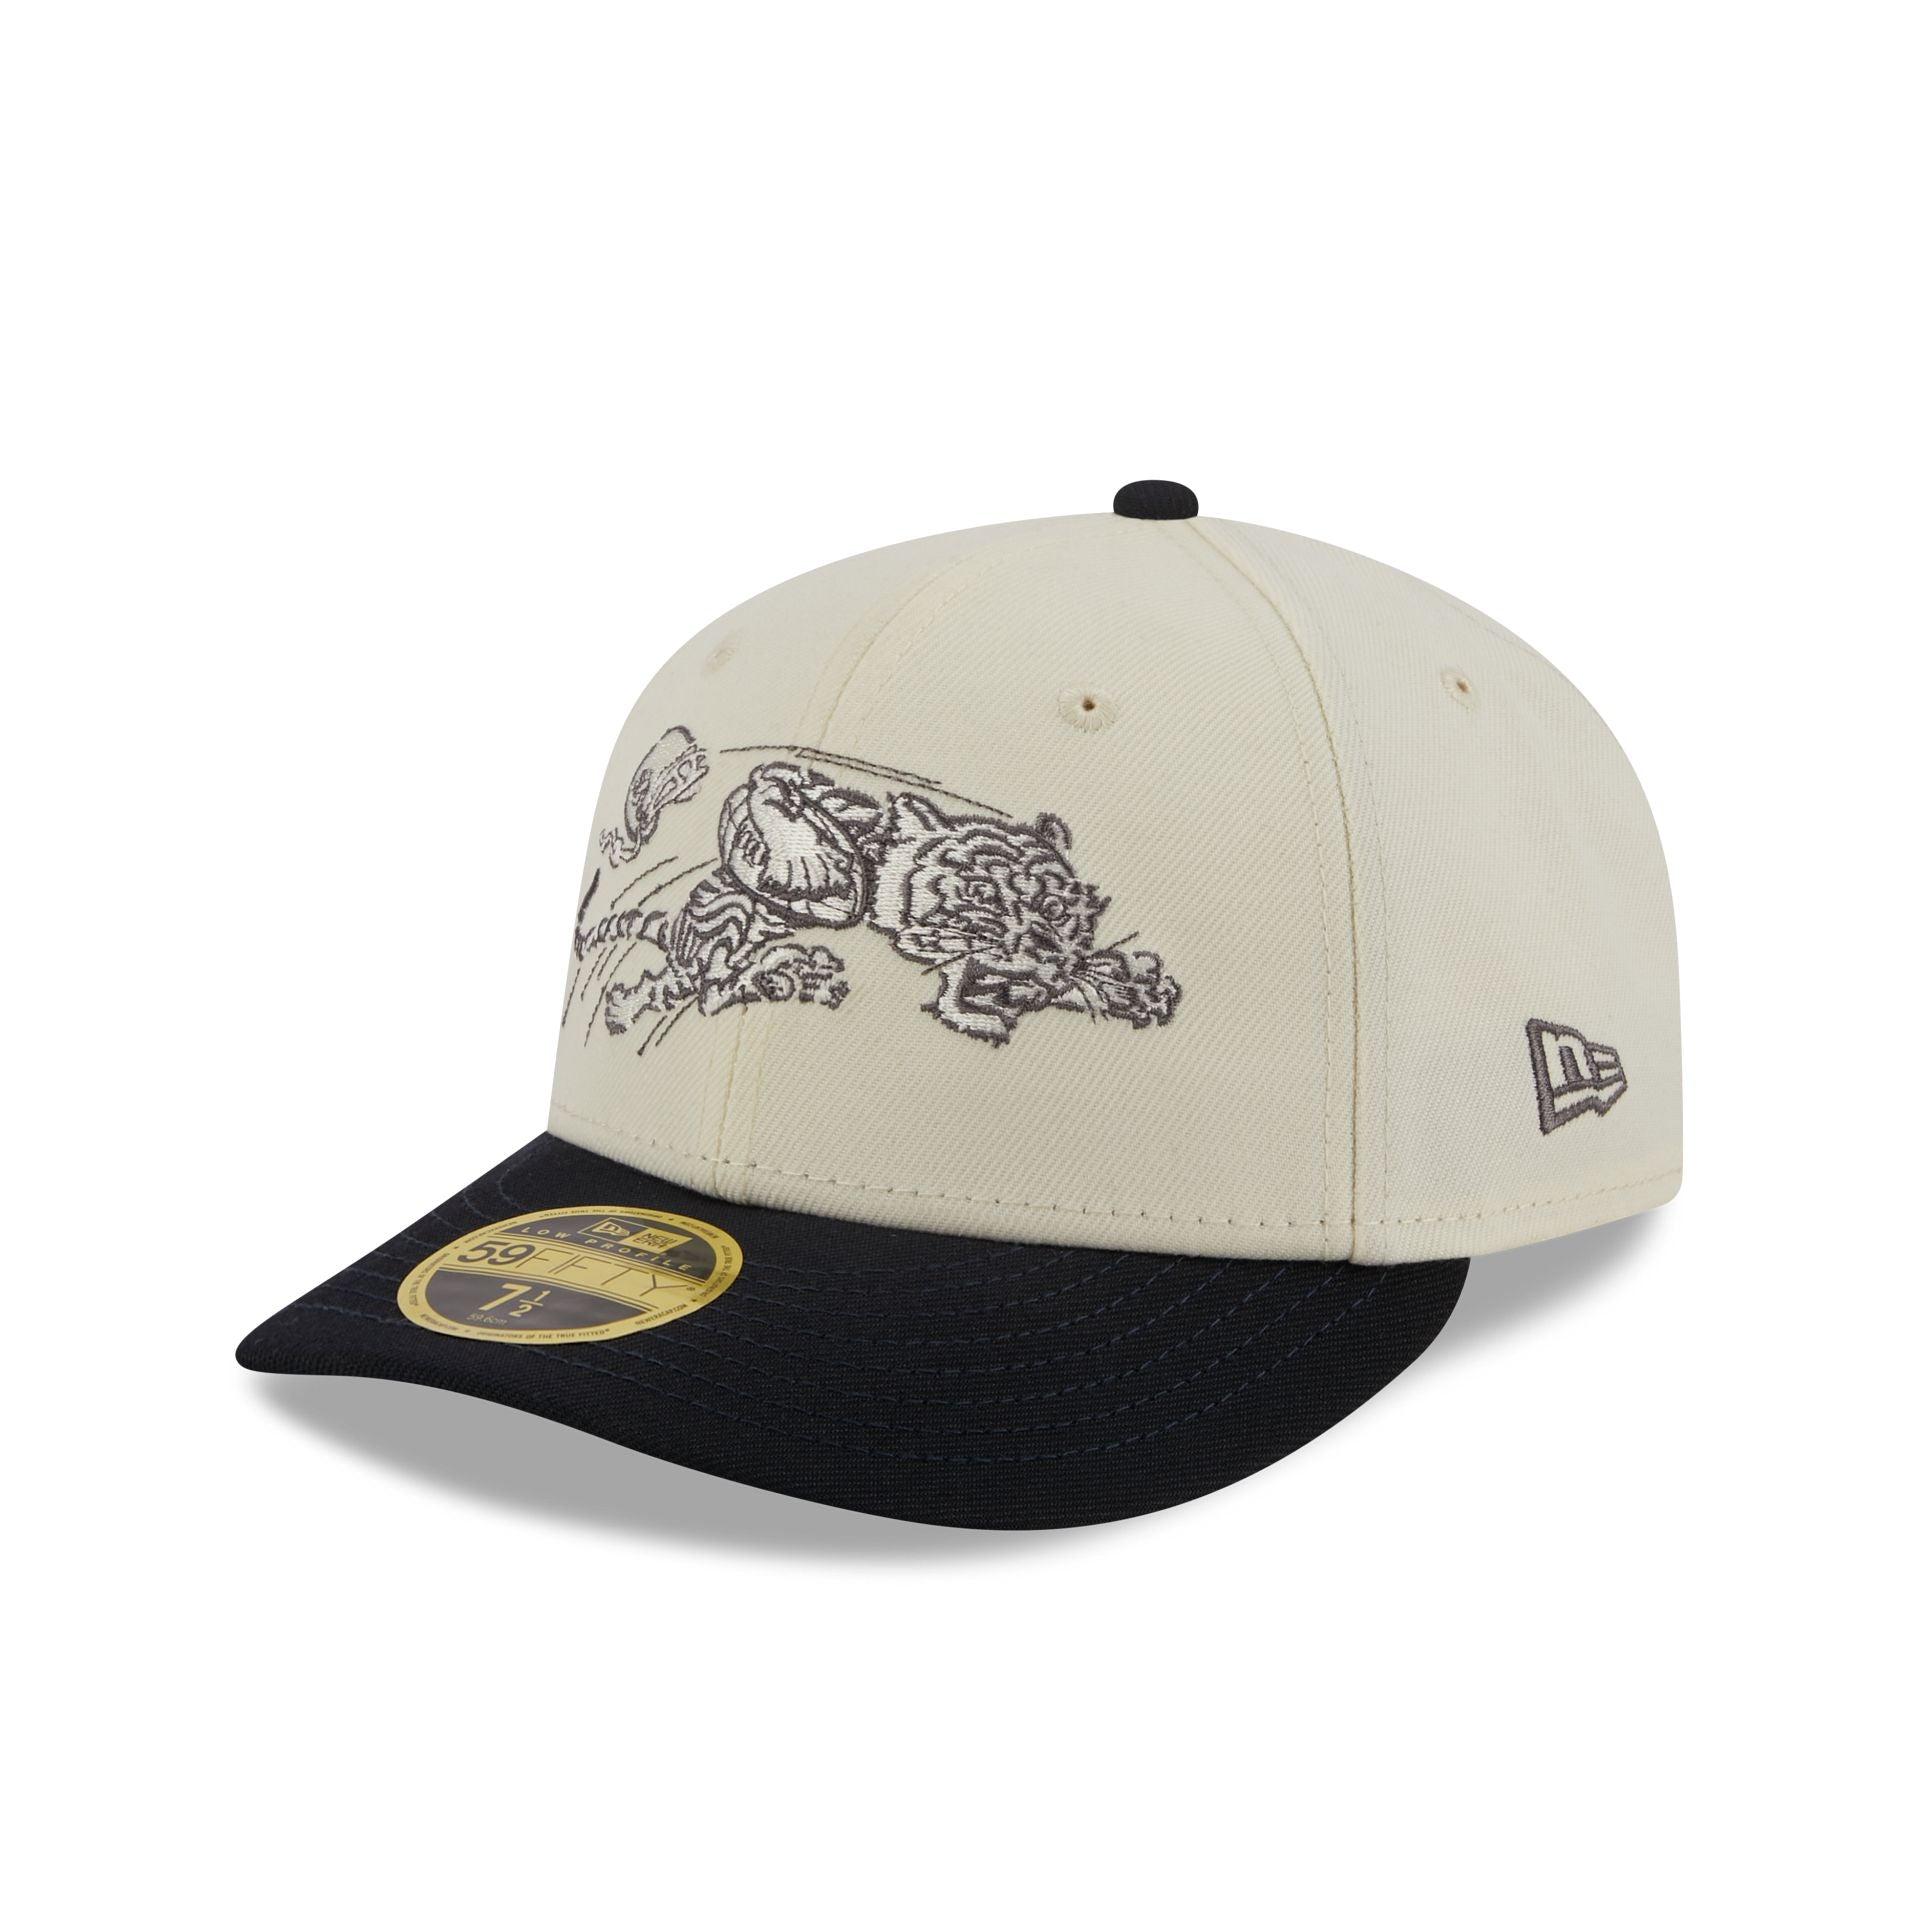 Bengals Hats New Caps Era & Cap – Cincinnati